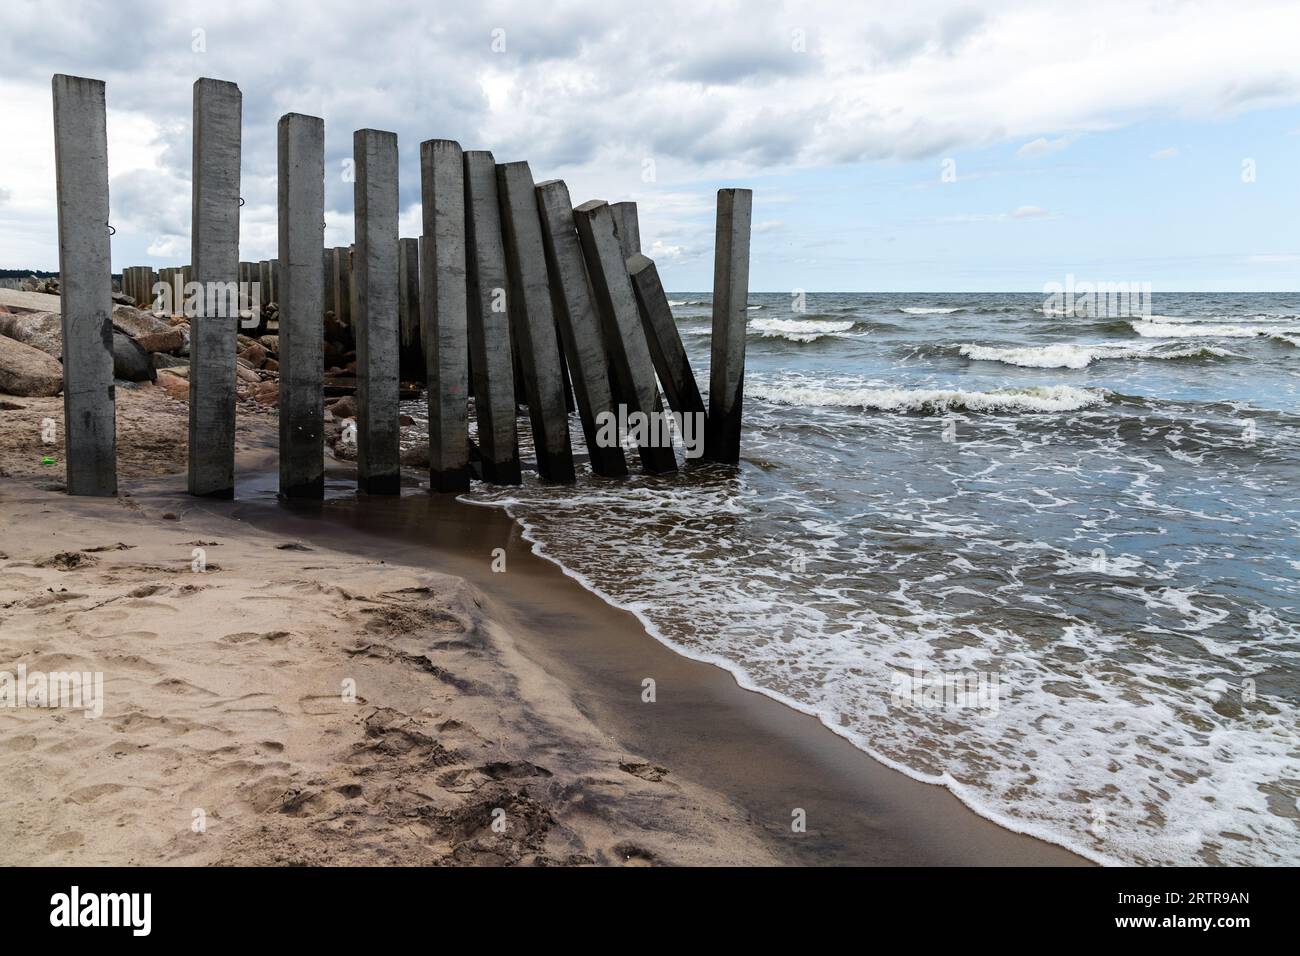 Paesaggio costiero con pilastri di cemento, frangiflutti rotti montati sulla costa del Mar Baltico. Svetlogorsk, Oblast' di Kaliningrad, Russia Foto Stock